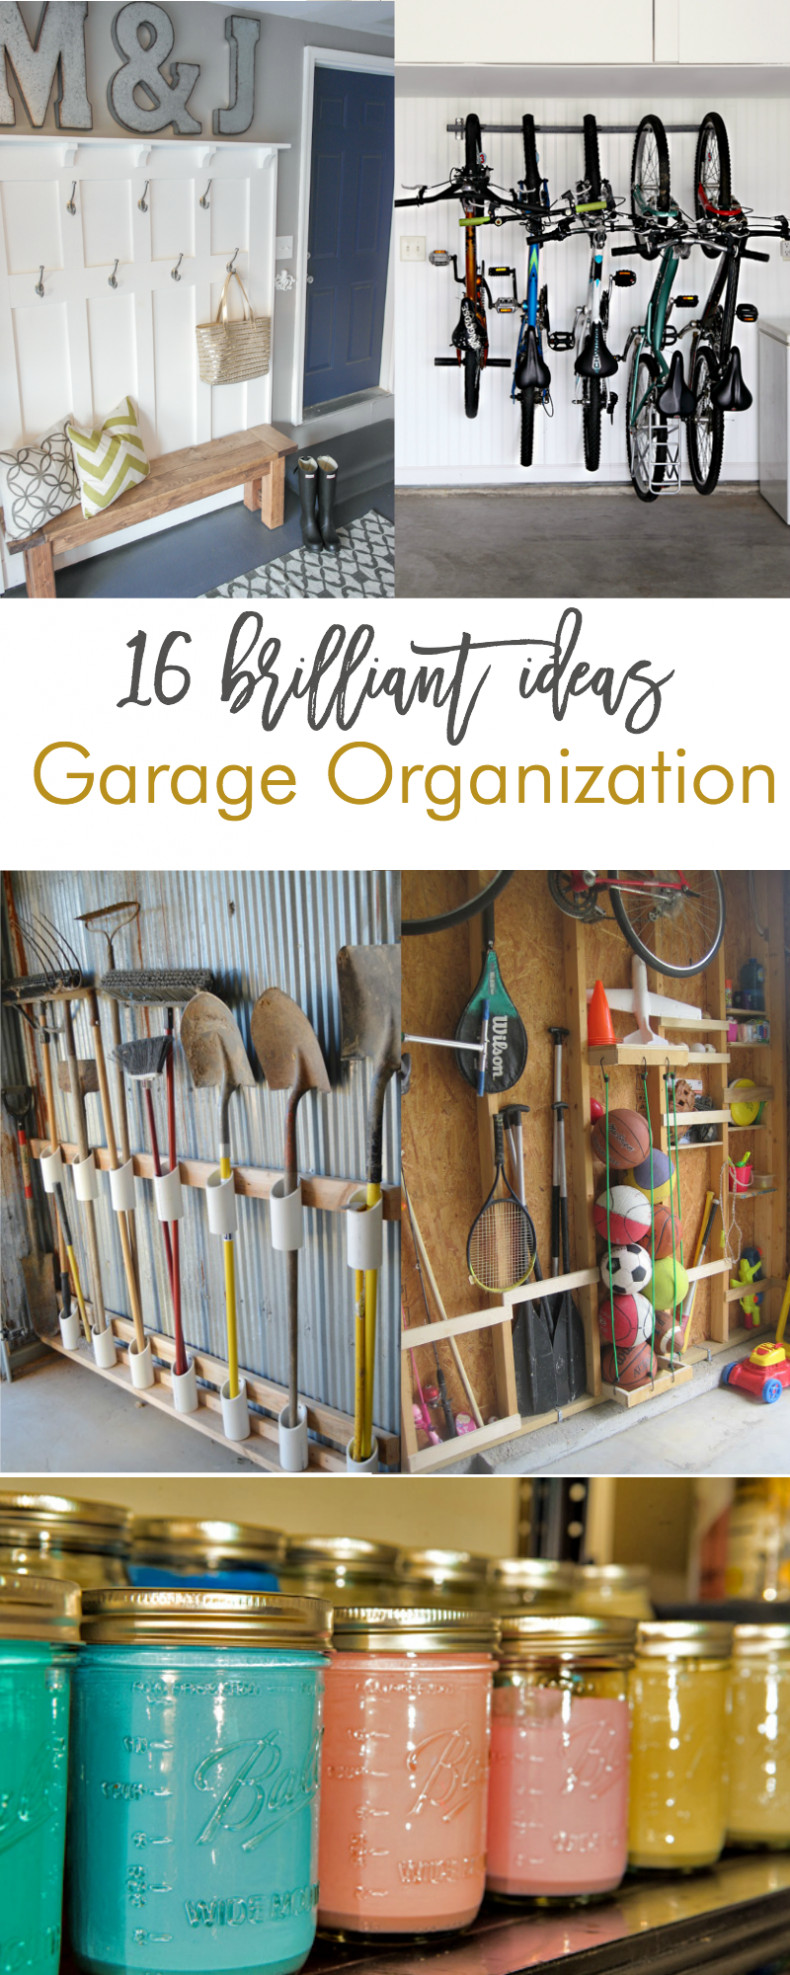 Garage Organizing Ideas
 16 Brilliant DIY Garage Organization Ideas